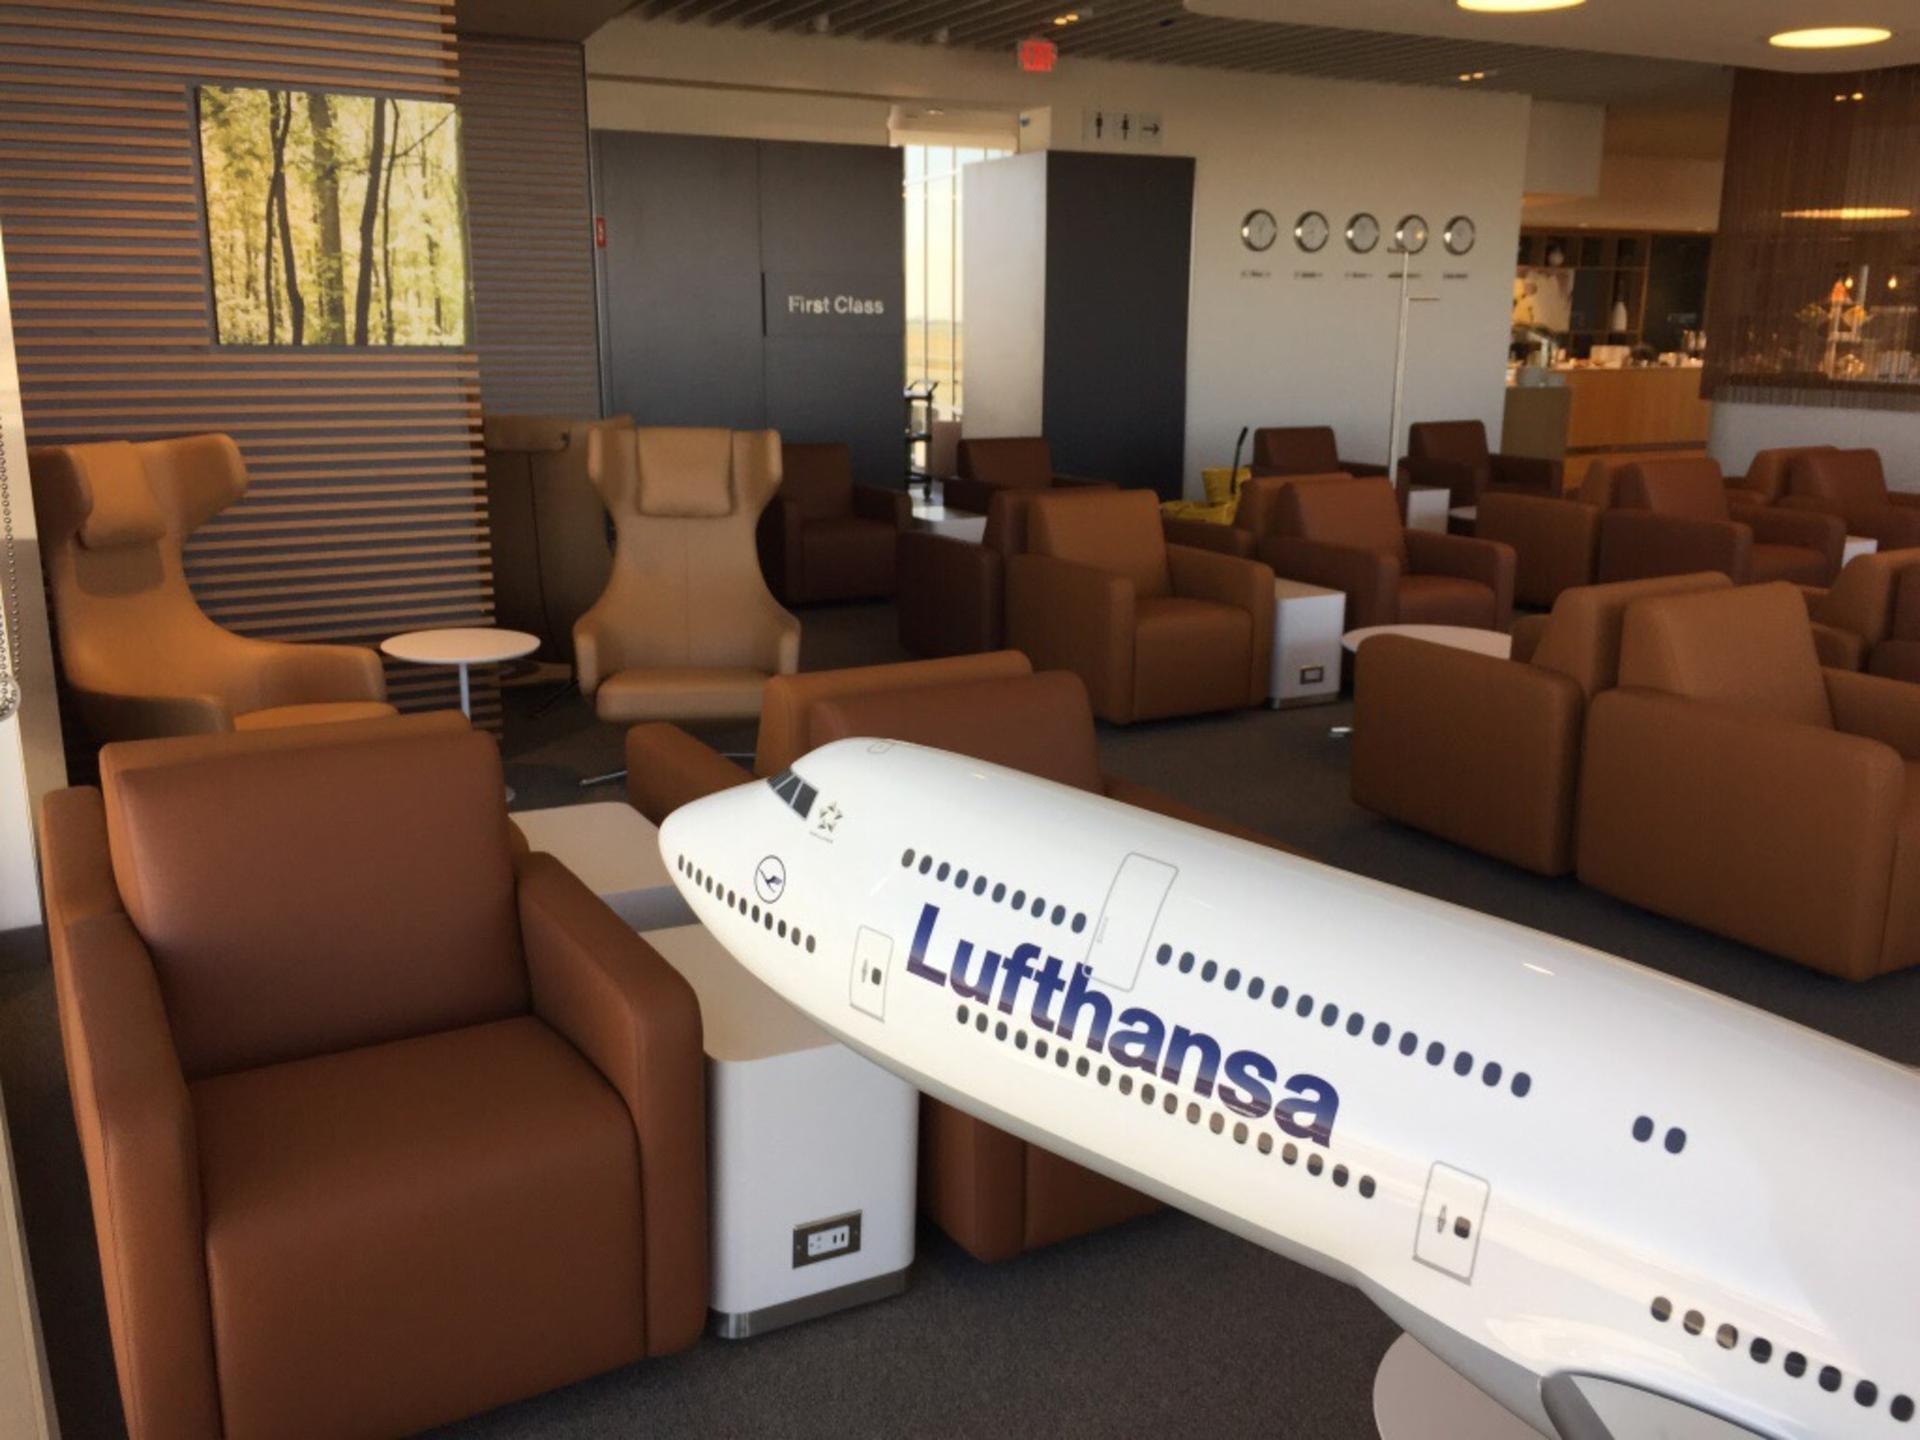 Lufthansa Lounge image 6 of 16